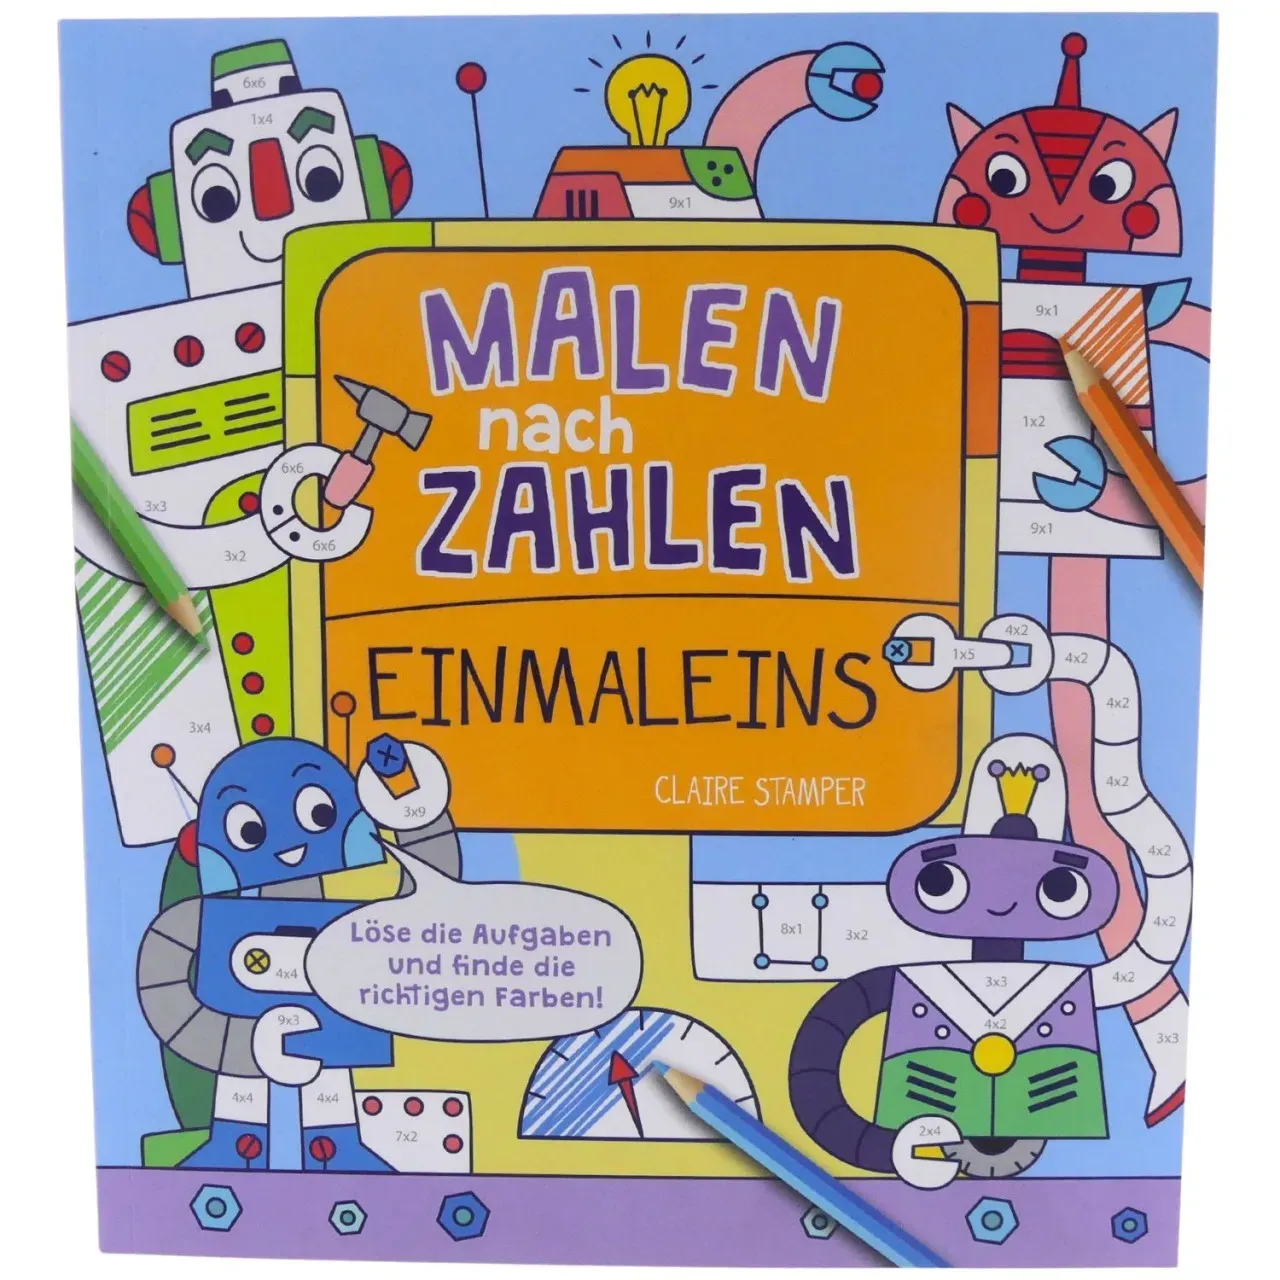 Malen Nach Zahlen Einmaleins ab 7 Jahren Kinderbuch Jugend kartoniert ullmann...